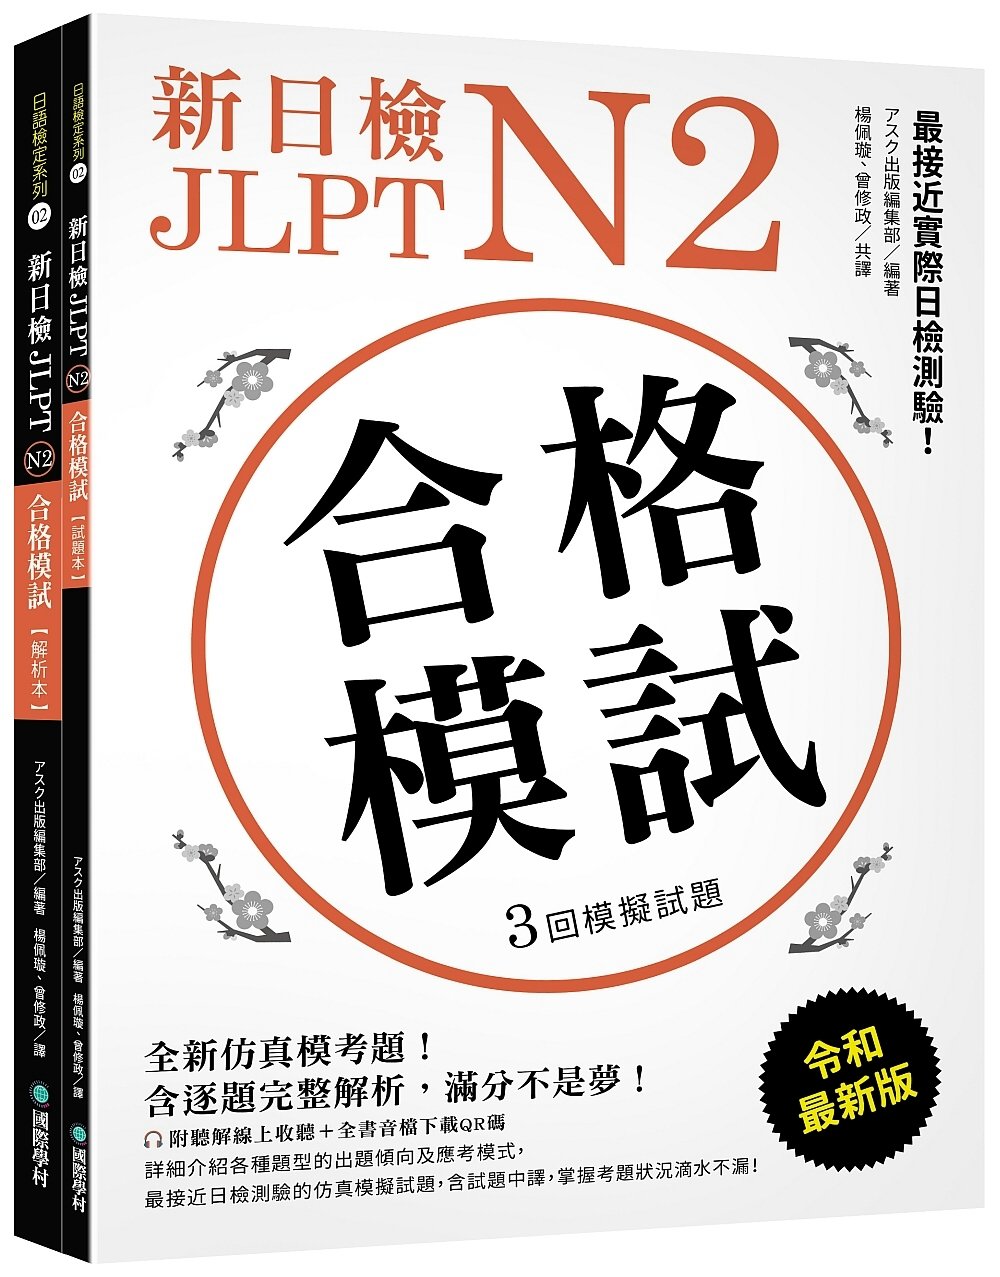 新日檢 JLPT N2 合格模試：全新仿真模考題，含逐題完整...